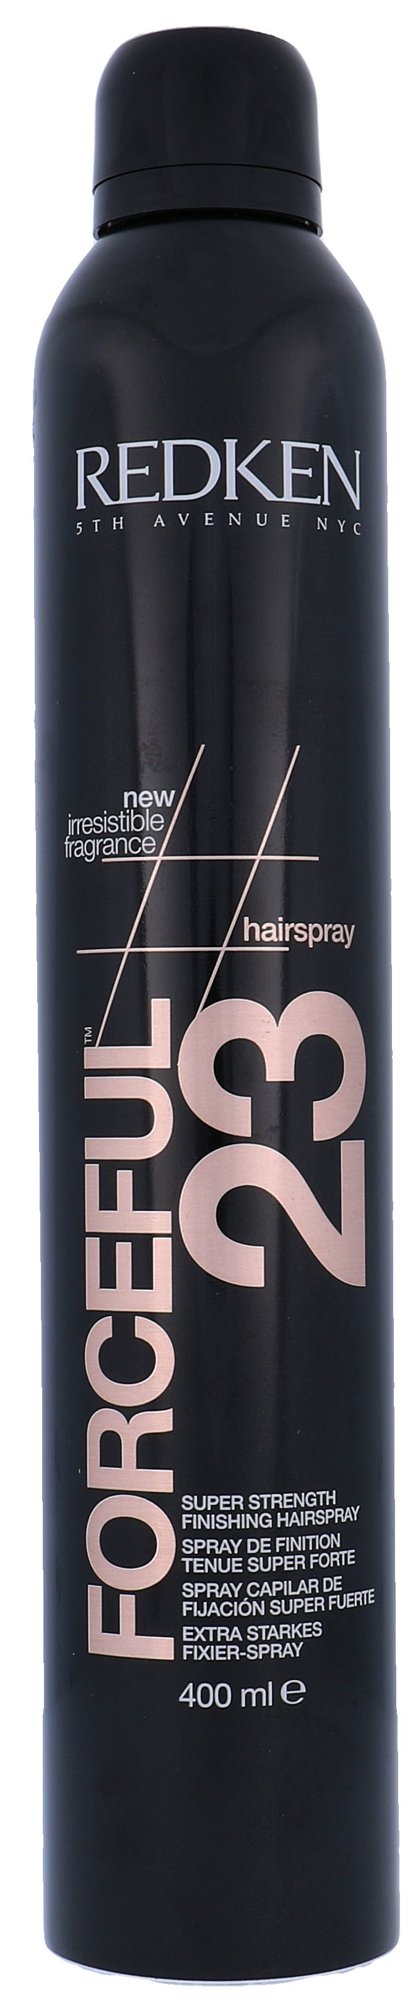 Redken Forceful 23 Hairspray